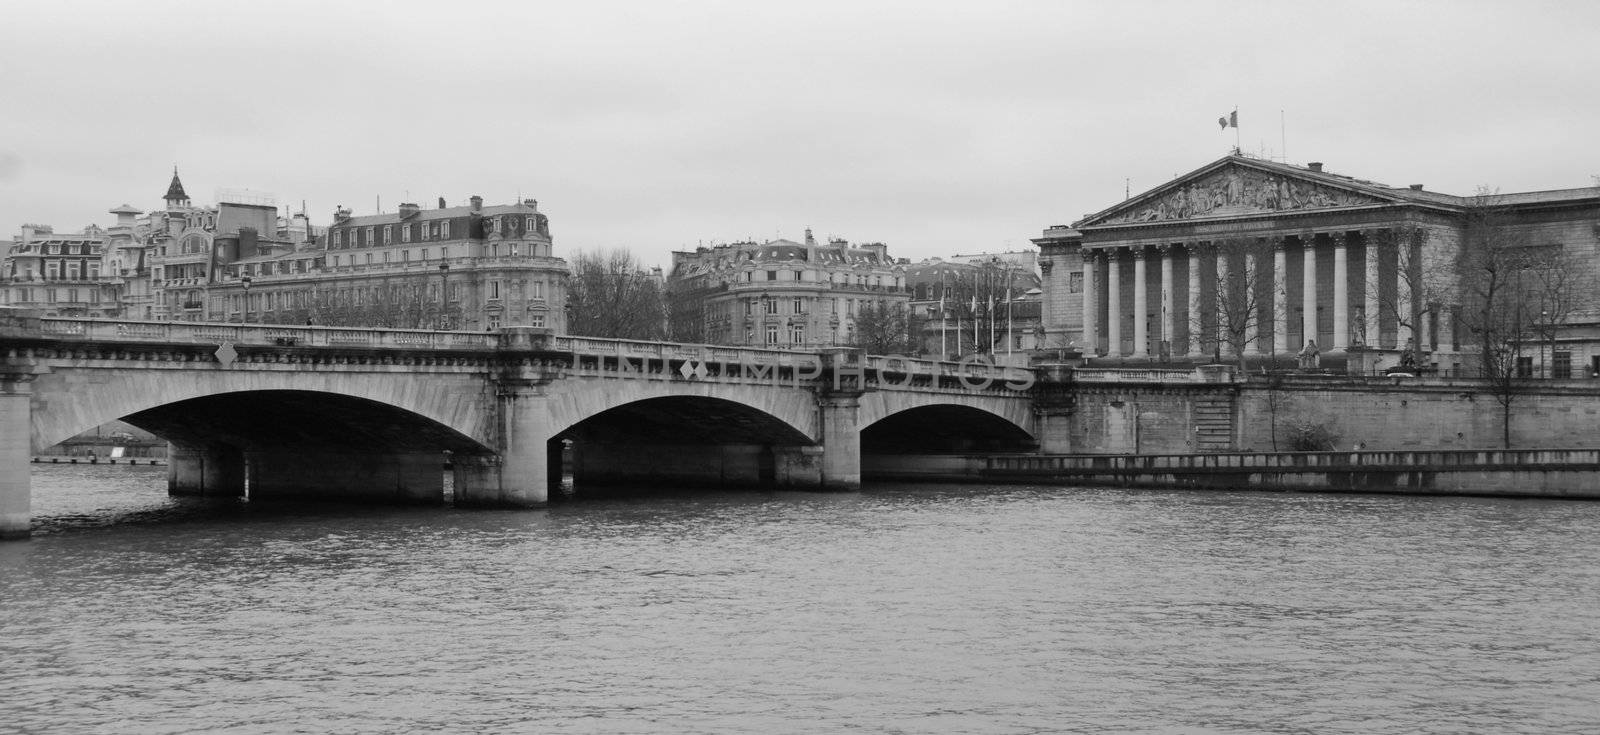 Vue of the Seine, Bridge and Assembl�e Nationale, Paris, France